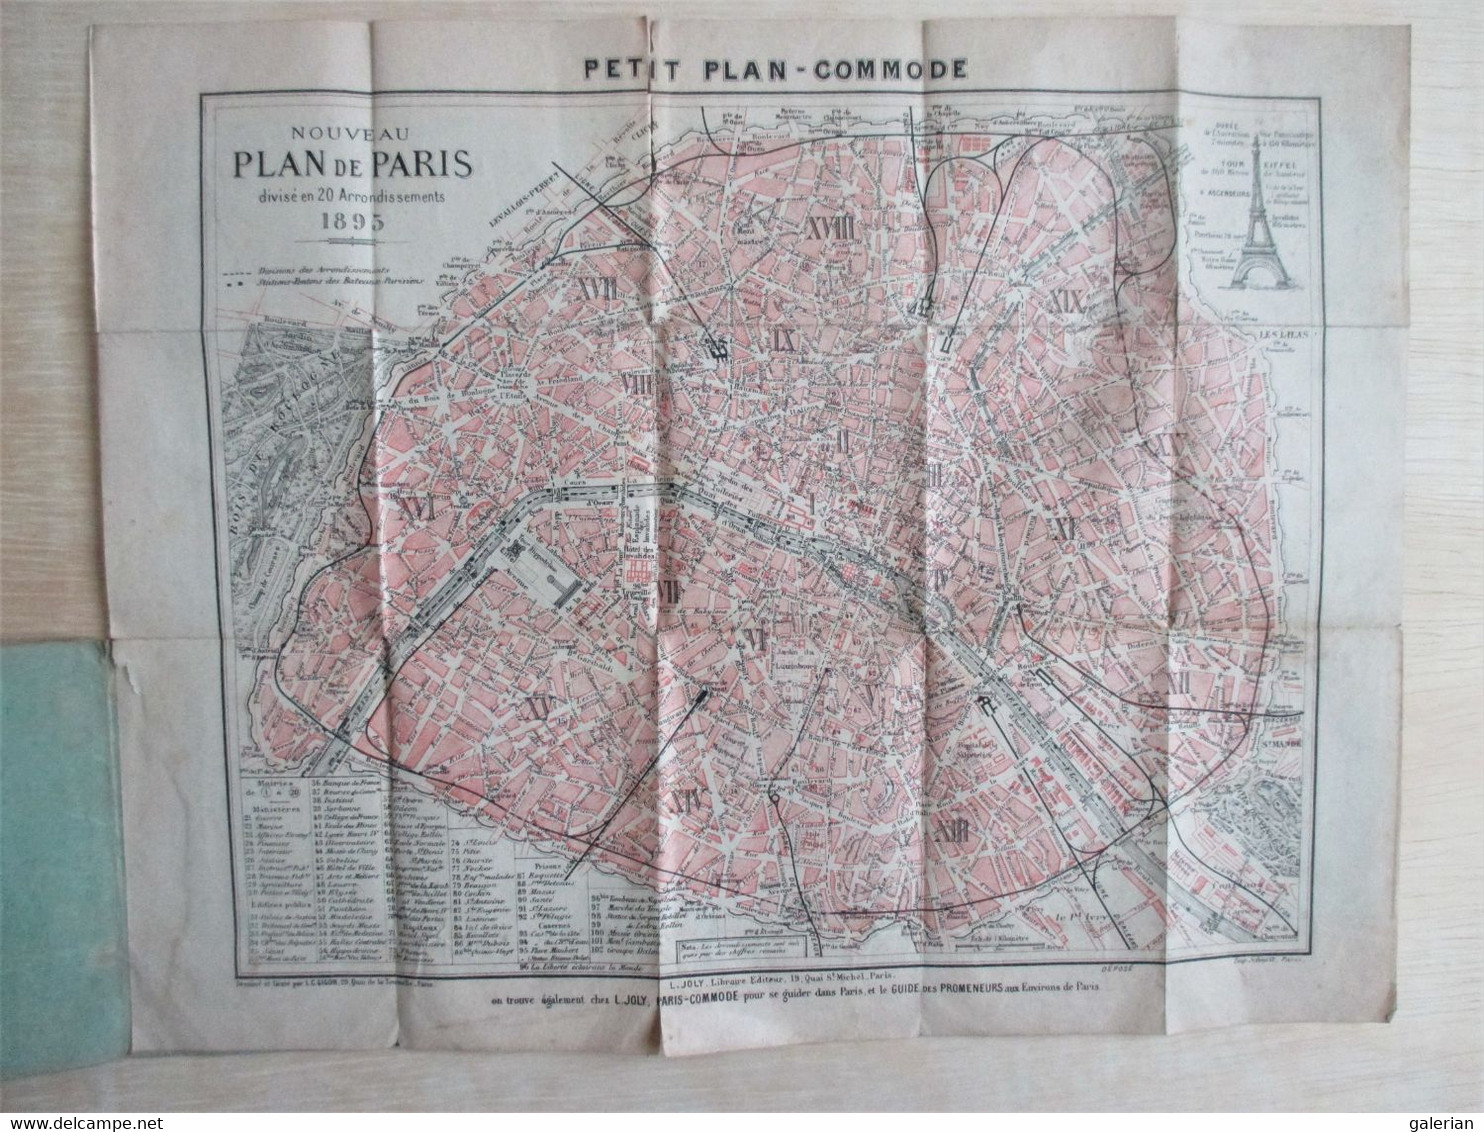 Petit Plan-Commode Pour Se Diriger Dans Paris ( 1895 ) Indispensable Aux Étrangers Et Nécessaire Aux Parisiens. - Cuadernillos Turísticos